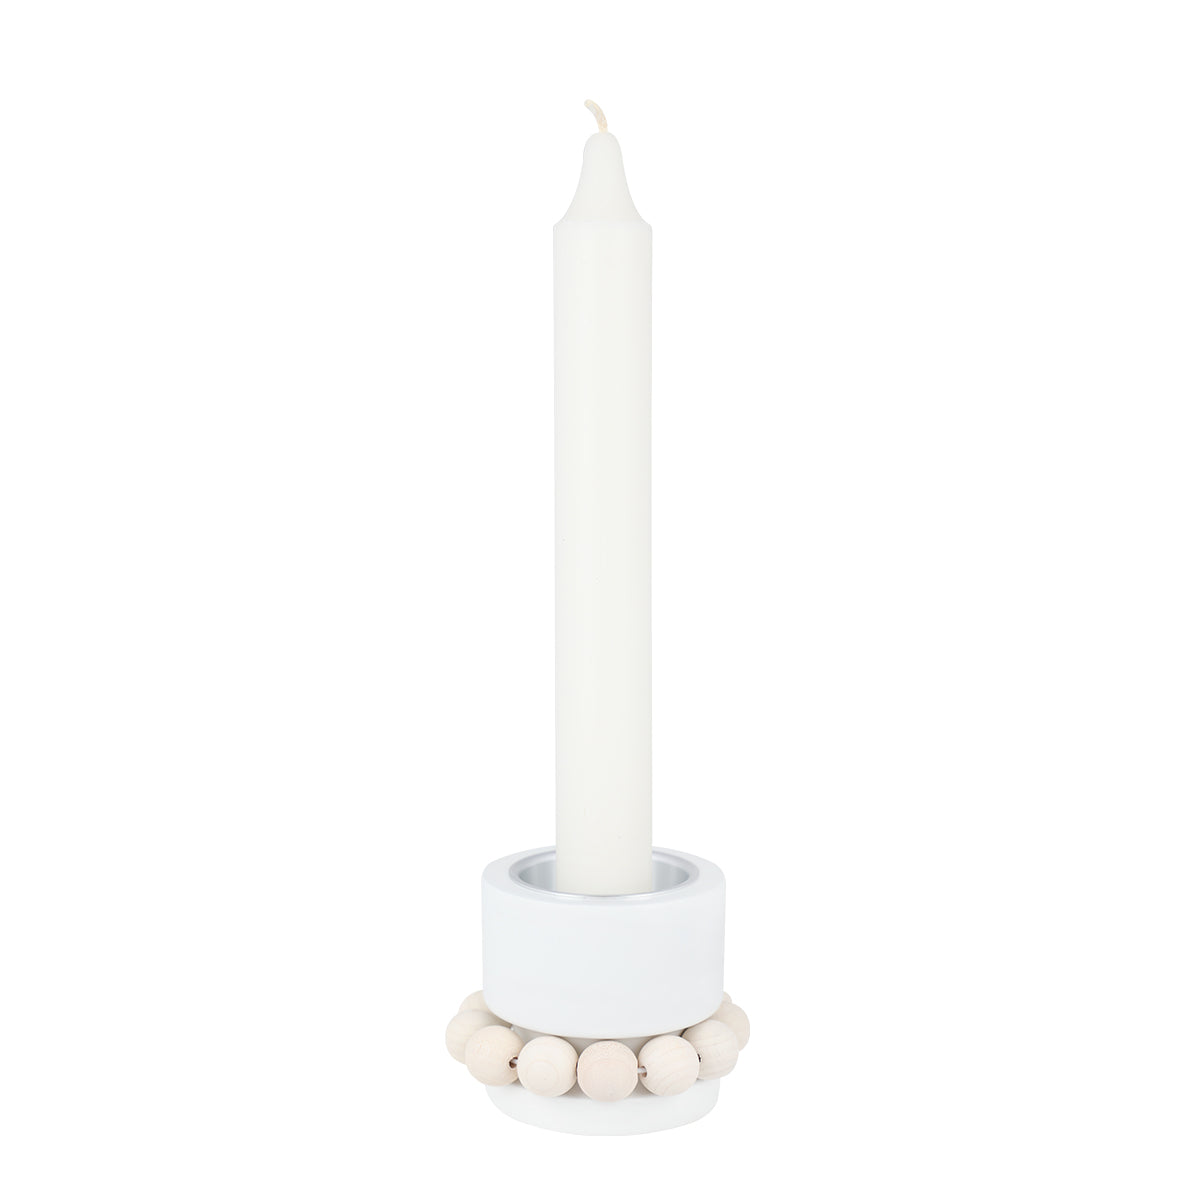 Prinsessa candleholder, white